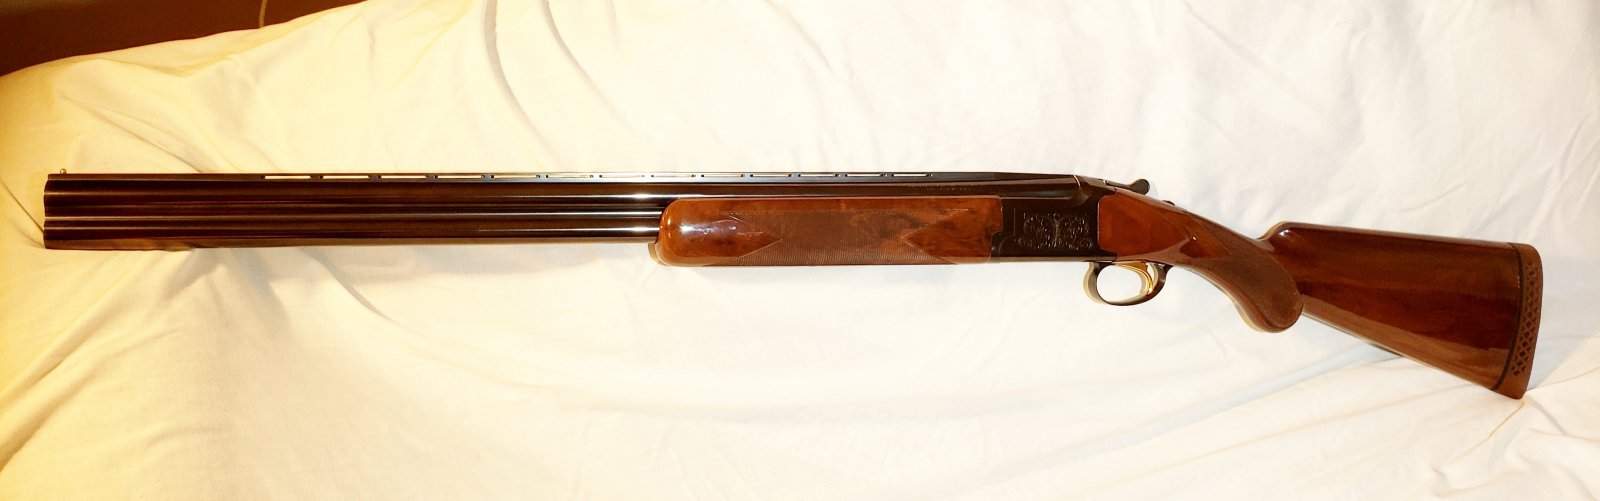 Browning Citori Lightning (Grade 1) shotgun